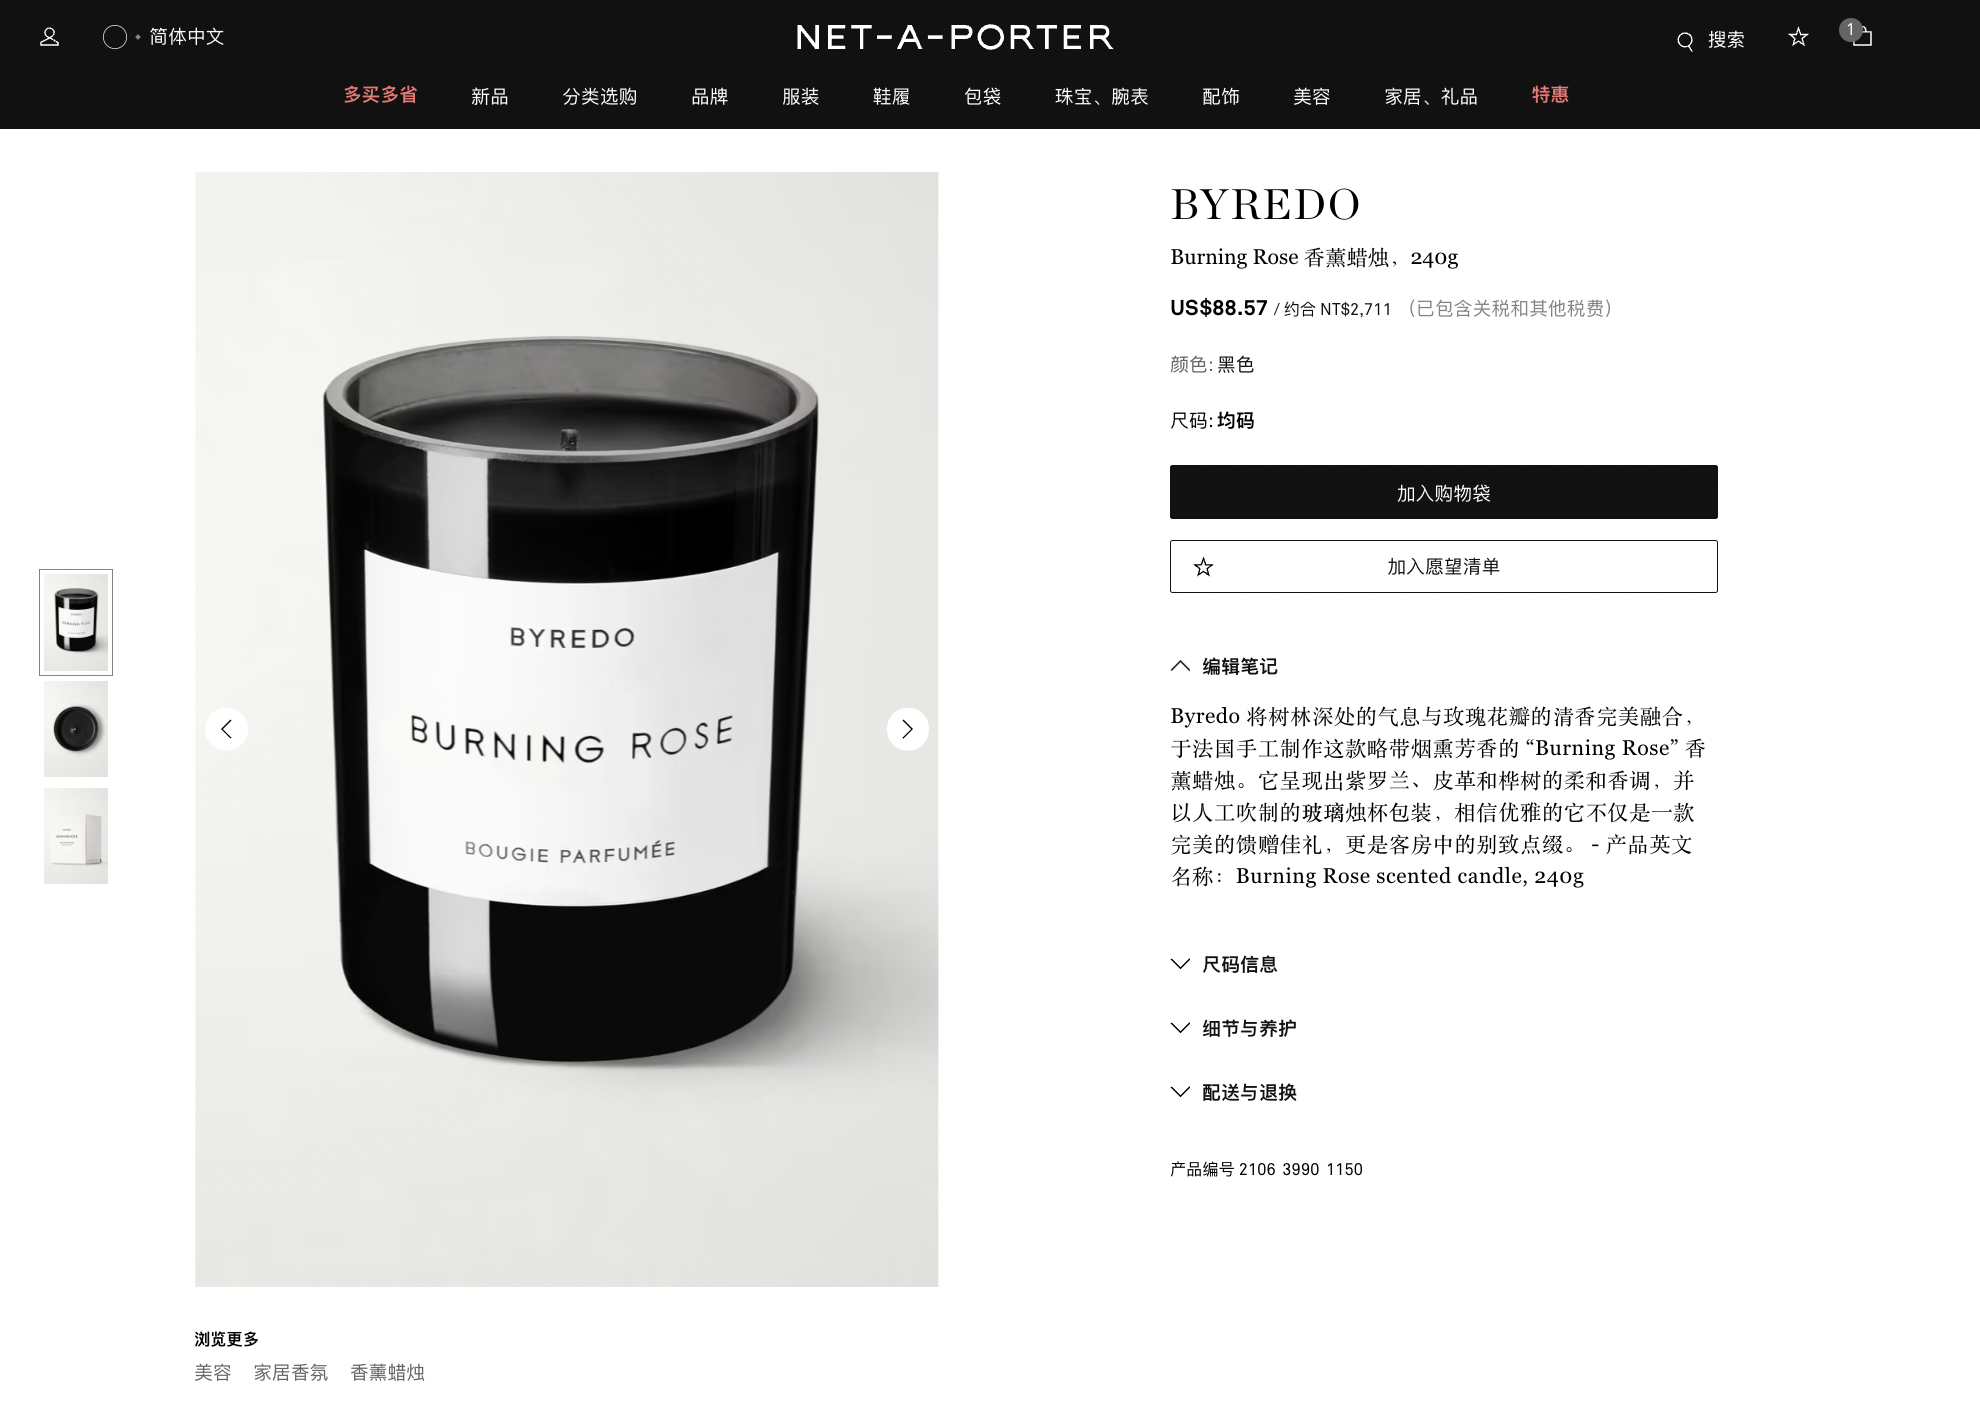 【國外網購】NET-A-PORTER購物網站教學！心得評價與商品開箱